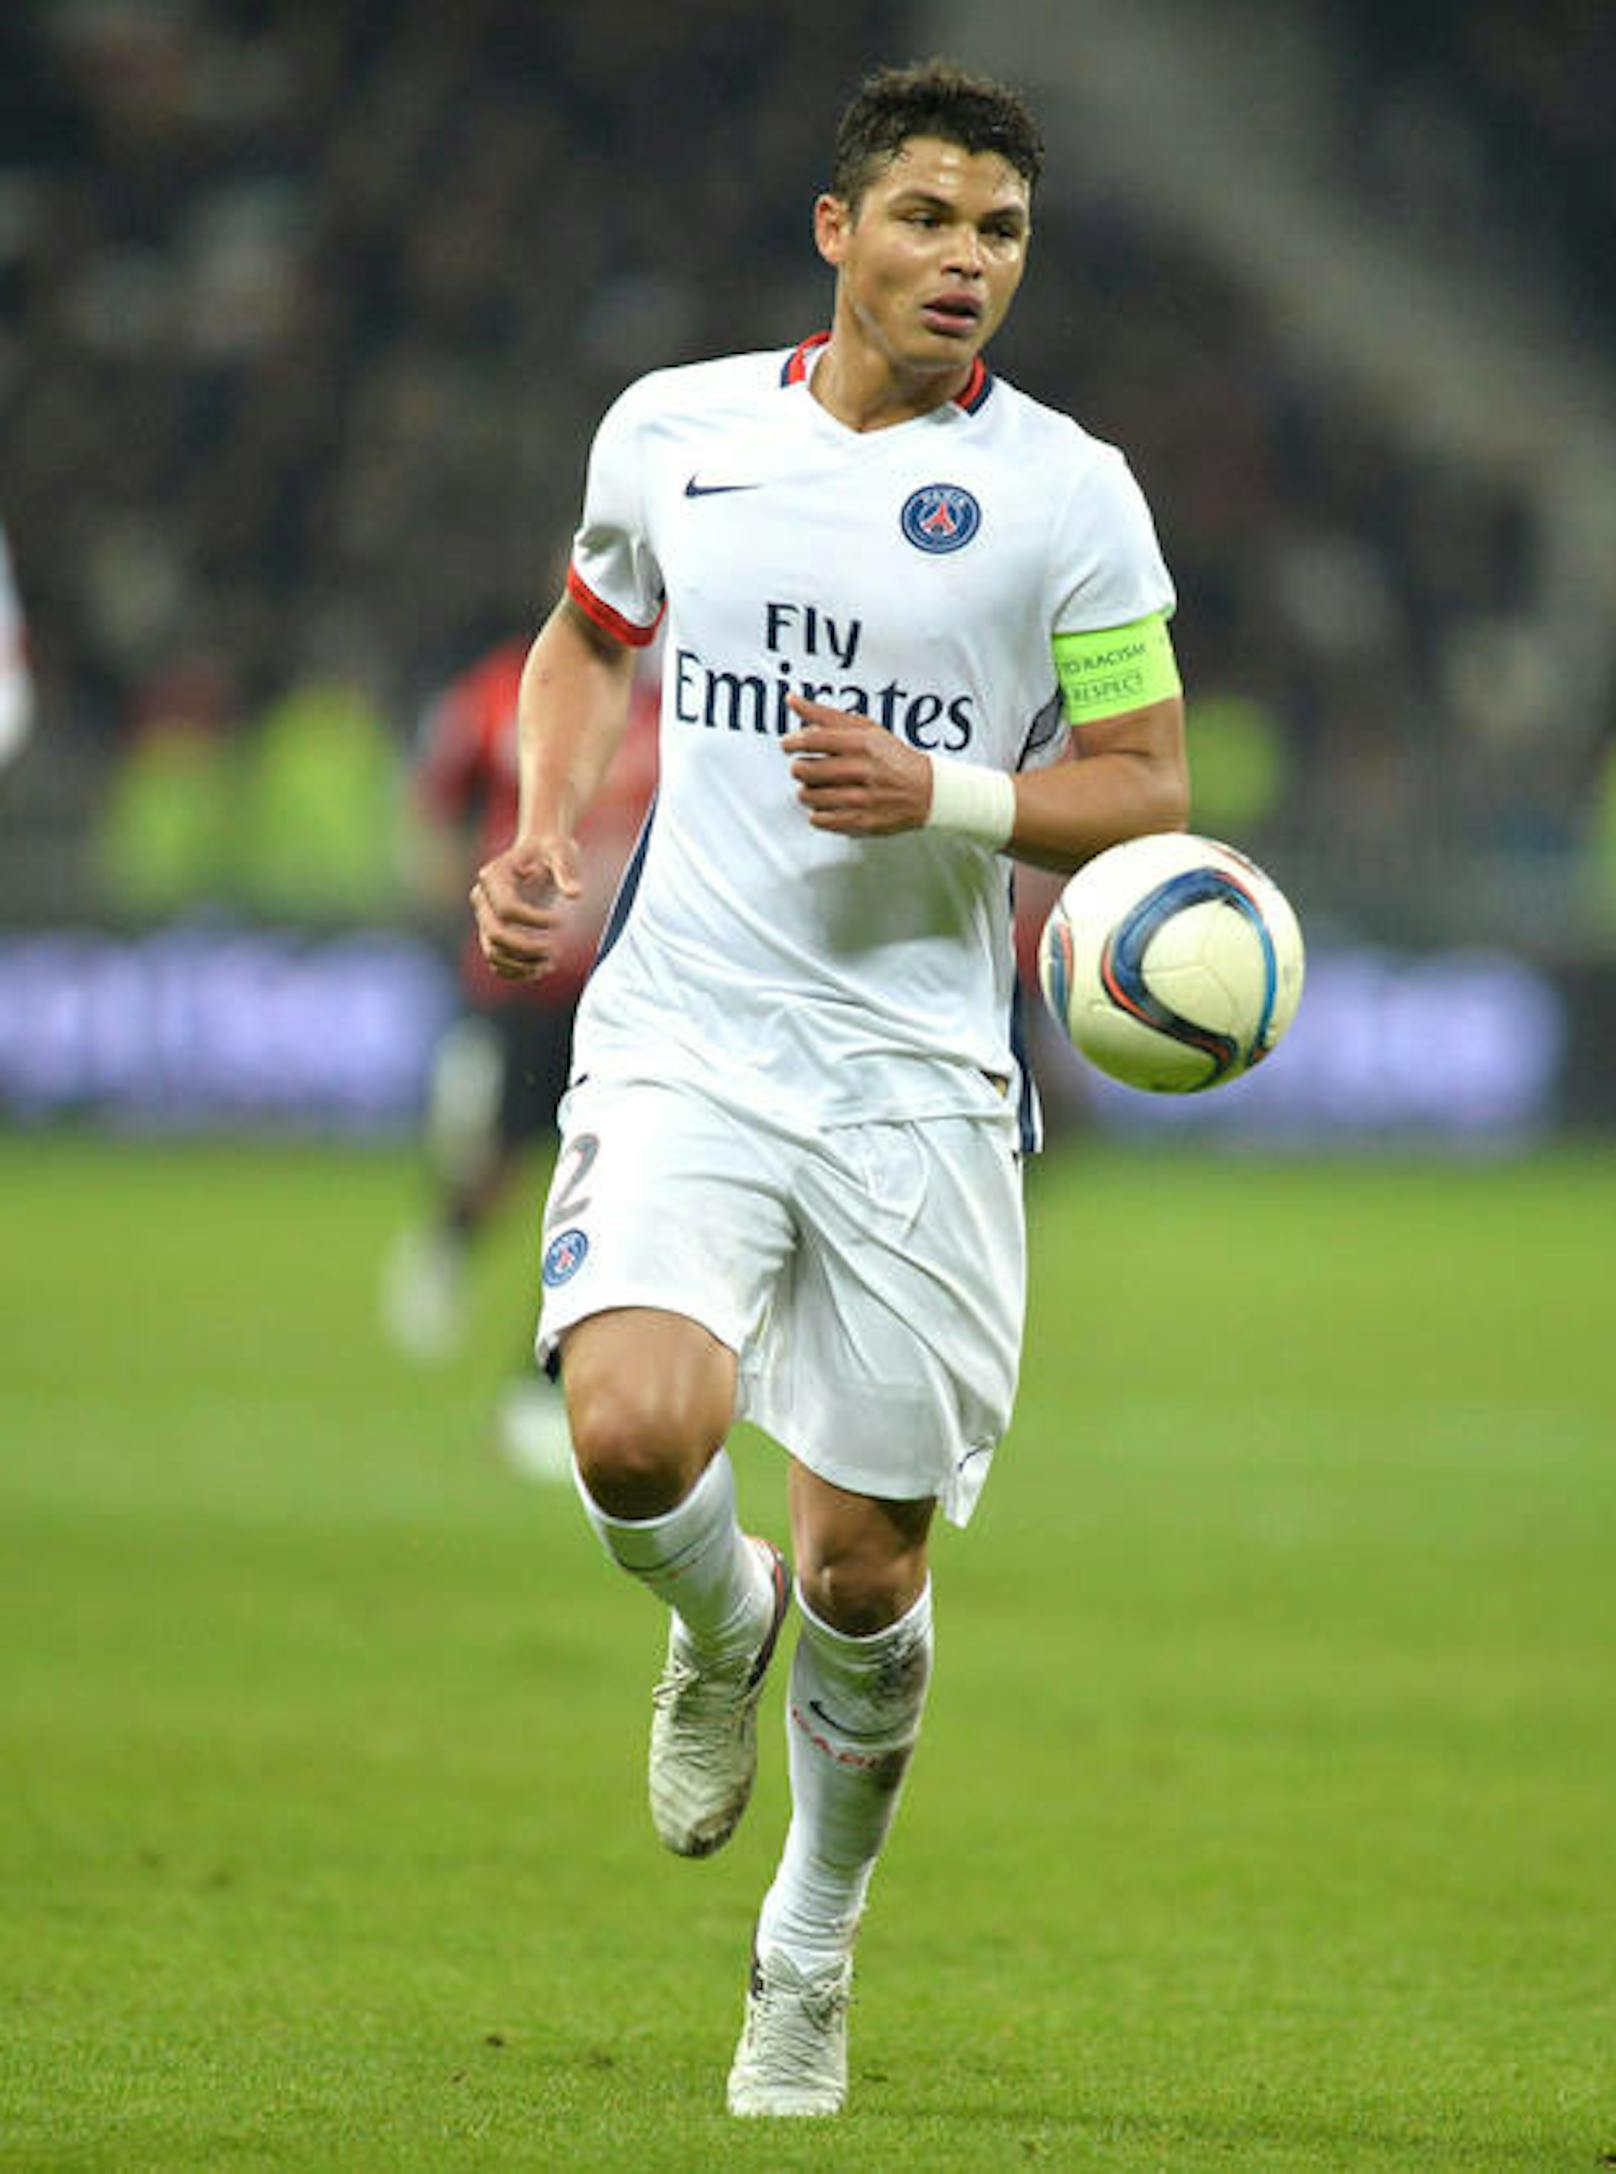 Thiago Silva (33)
Position: Innenverteidigung
Verein: Paris Saint-Germain
Marktwert: 10,00 Mio. 